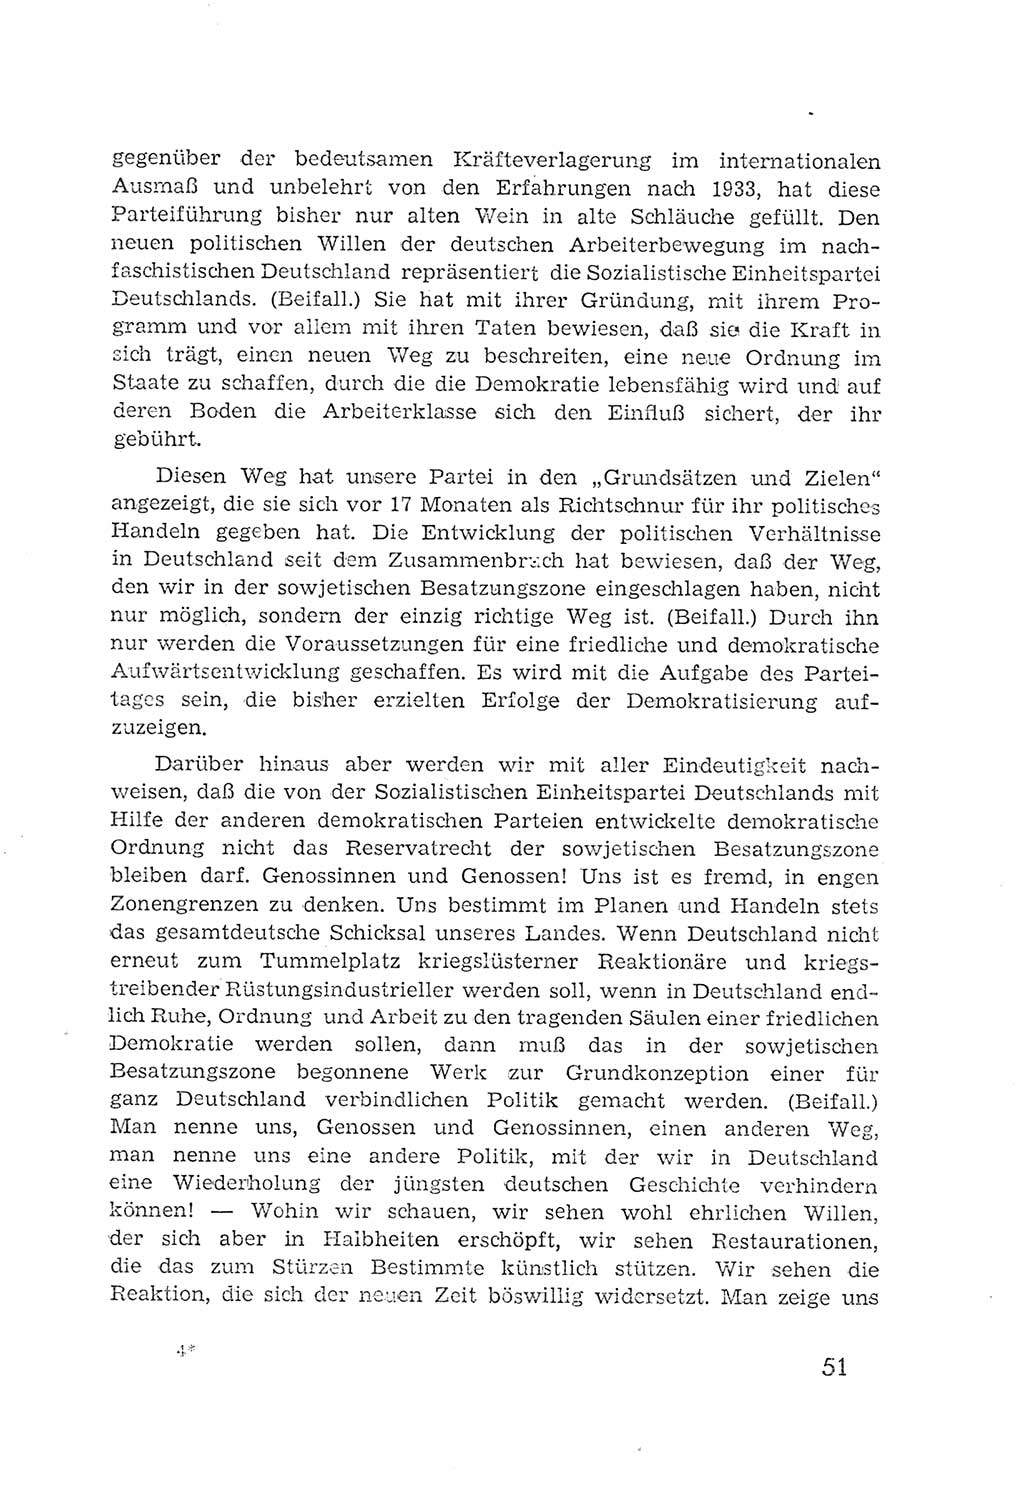 Protokoll der Verhandlungen des 2. Parteitages der Sozialistischen Einheitspartei Deutschlands (SED) [Sowjetische Besatzungszone (SBZ) Deutschlands] 1947, Seite 51 (Prot. Verh. 2. PT SED SBZ Dtl. 1947, S. 51)